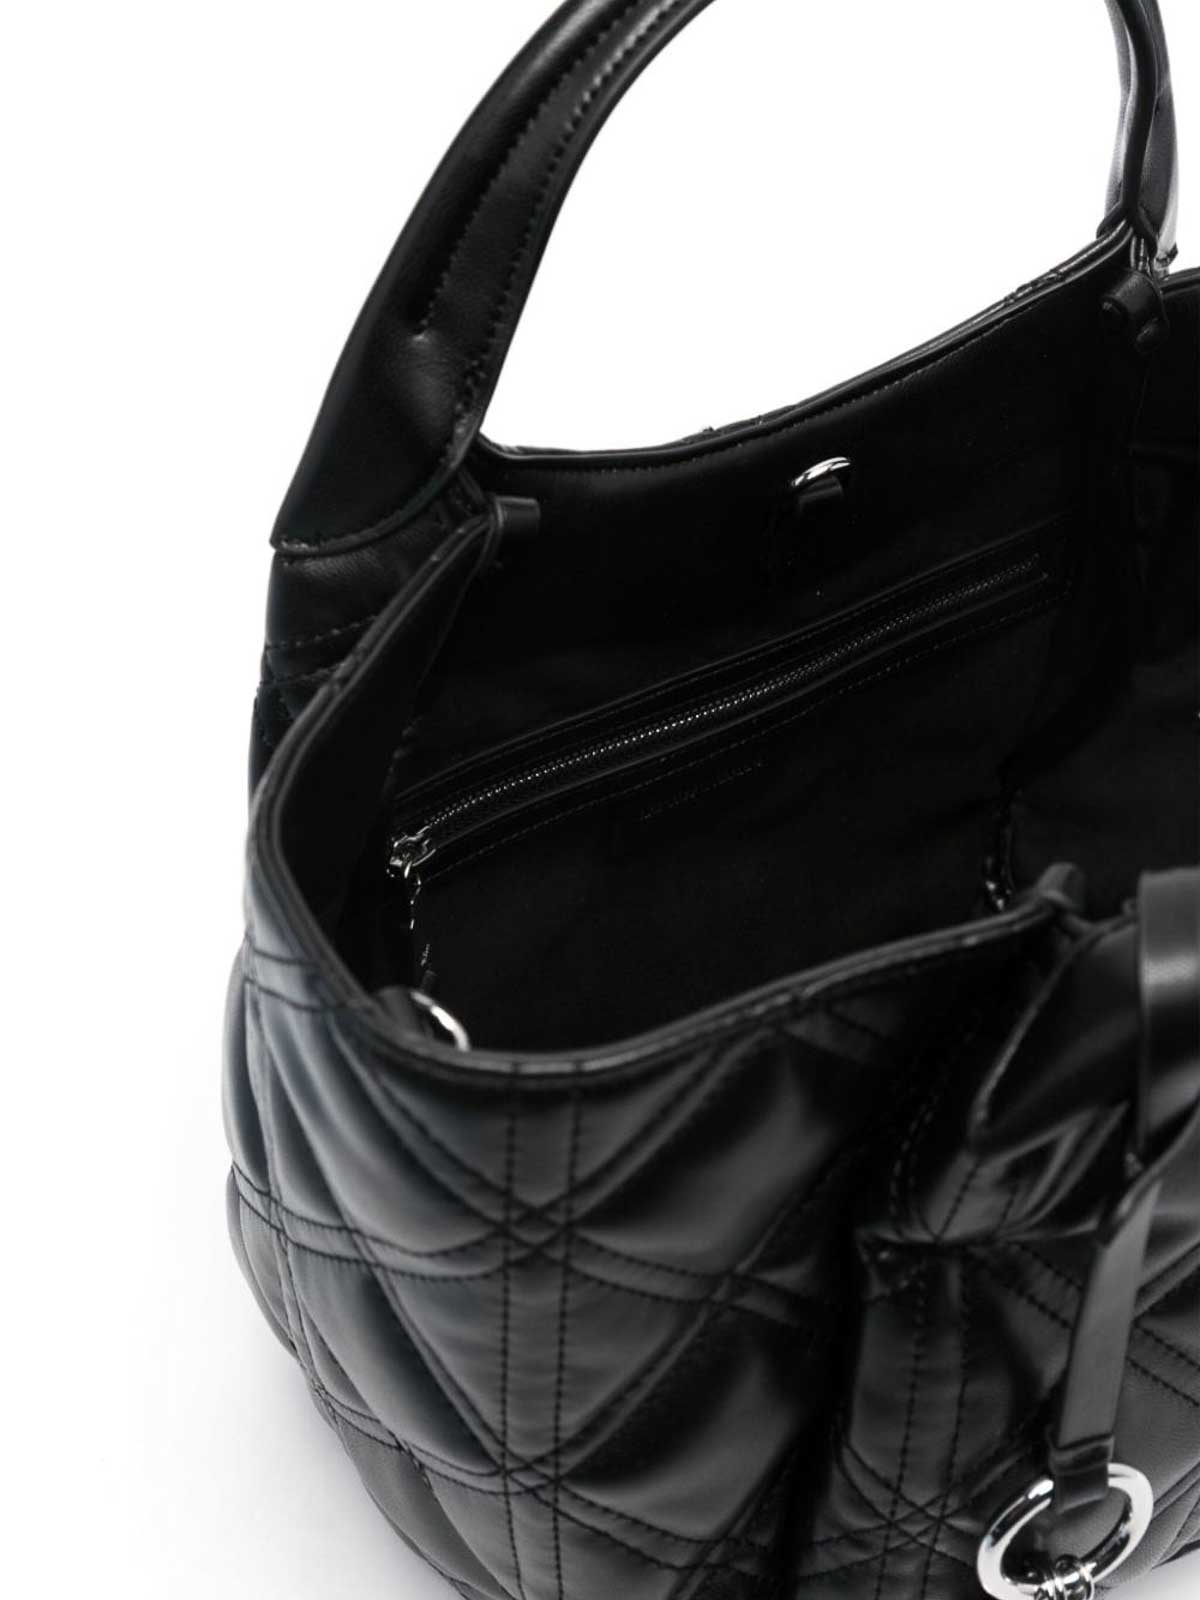 Emporio Armani Shopping Bags - Black